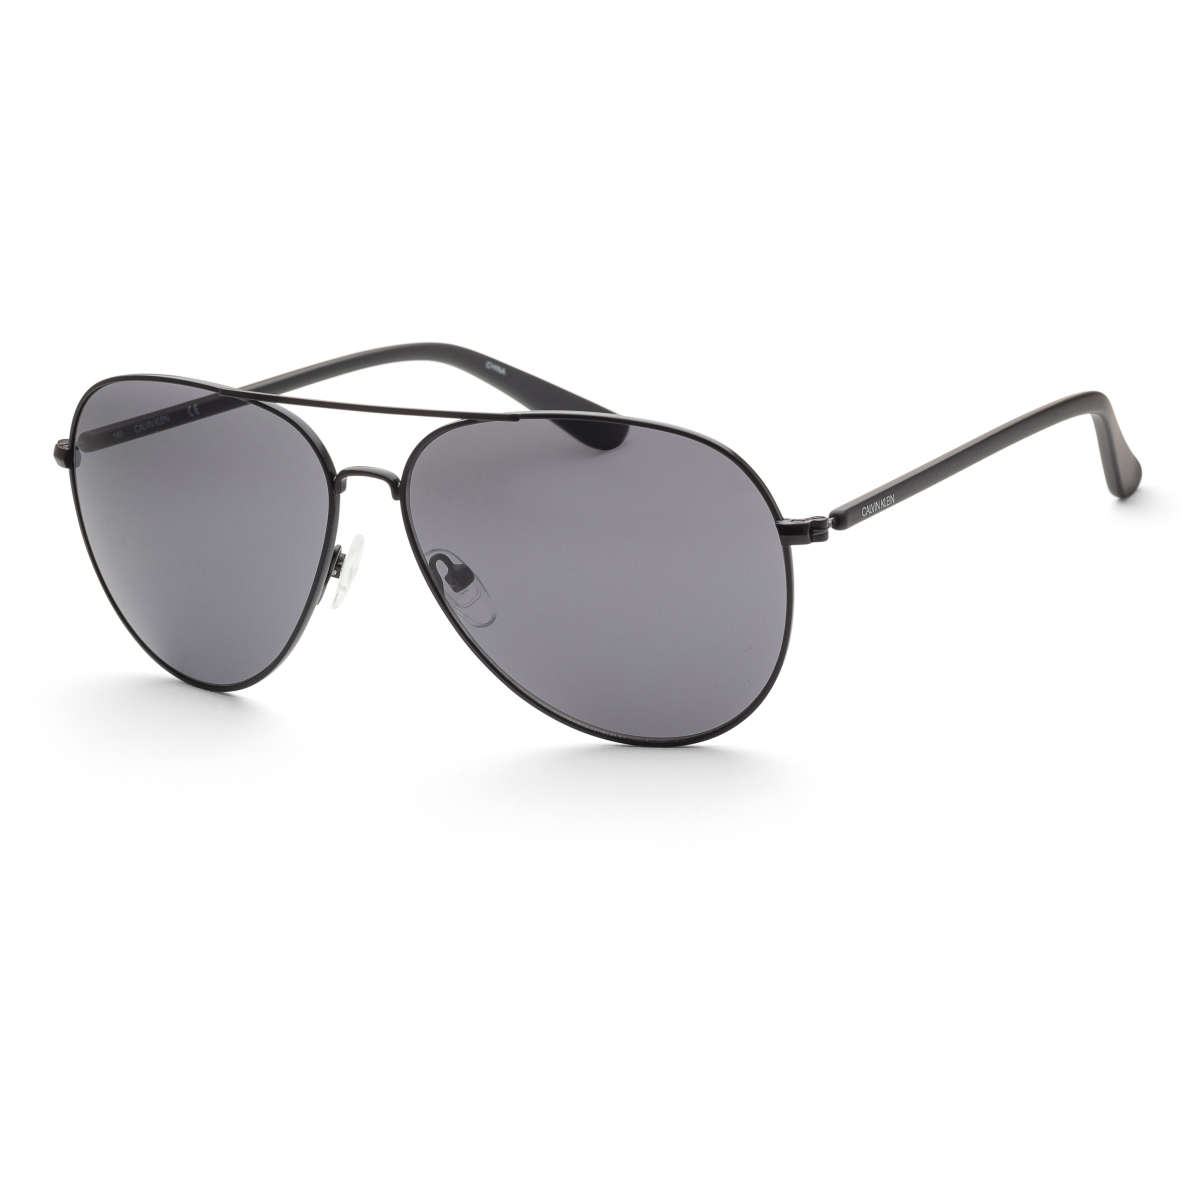 CALVIN KLEIN Fashion Men's Sunglasses SKU: CK19314S-001    UPC: 883901117417